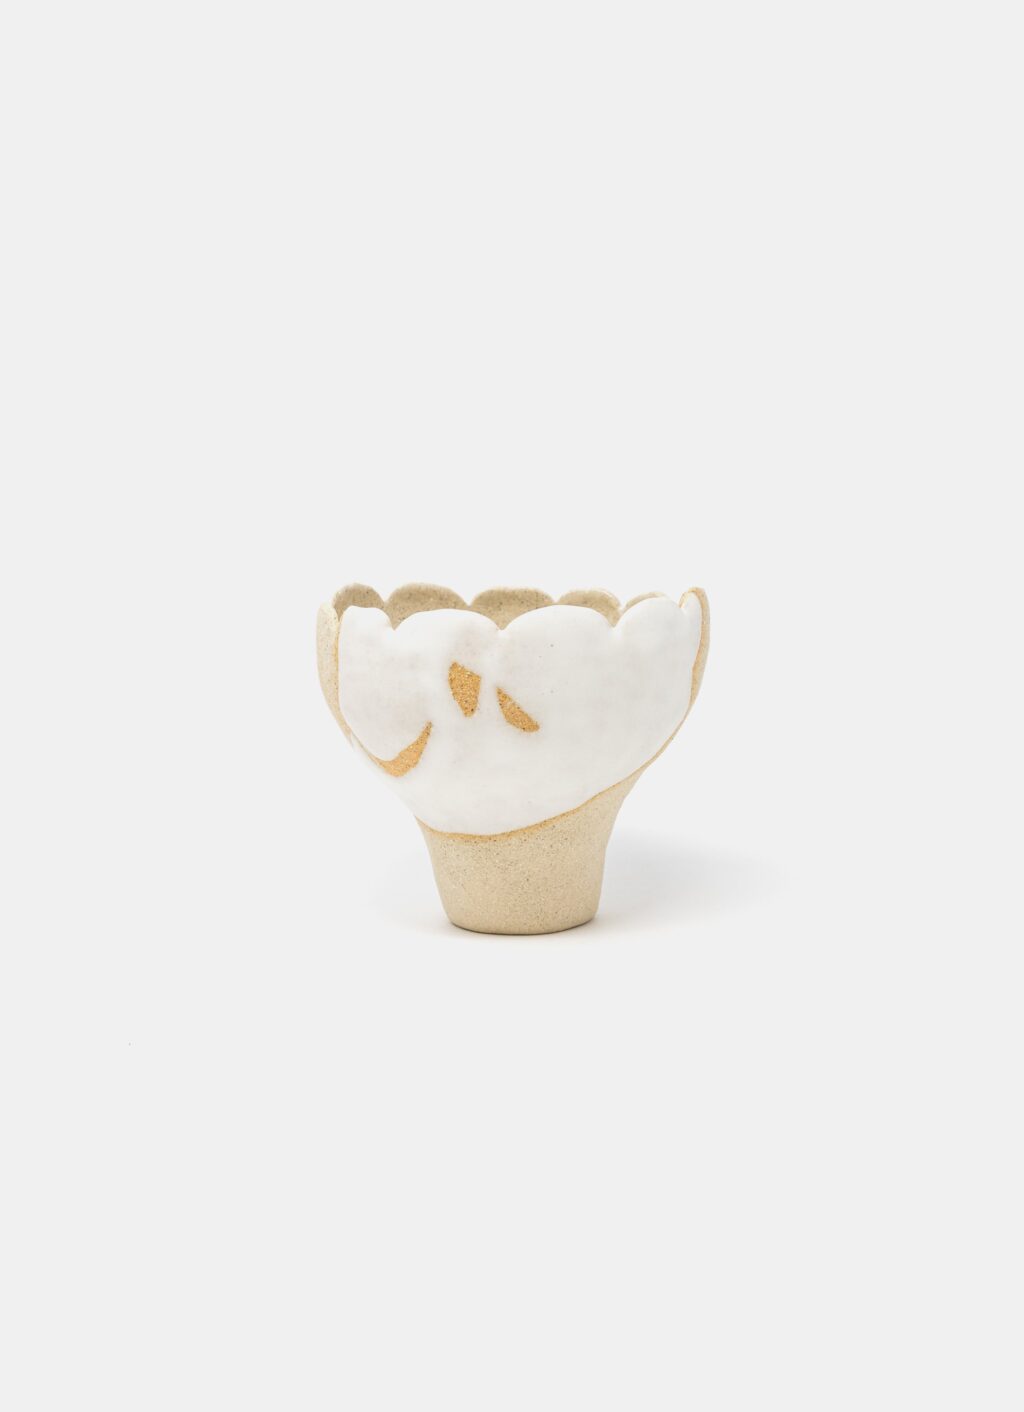 Mano Mani - Ikebana Vase - Light Stoneware and white glaze - 3